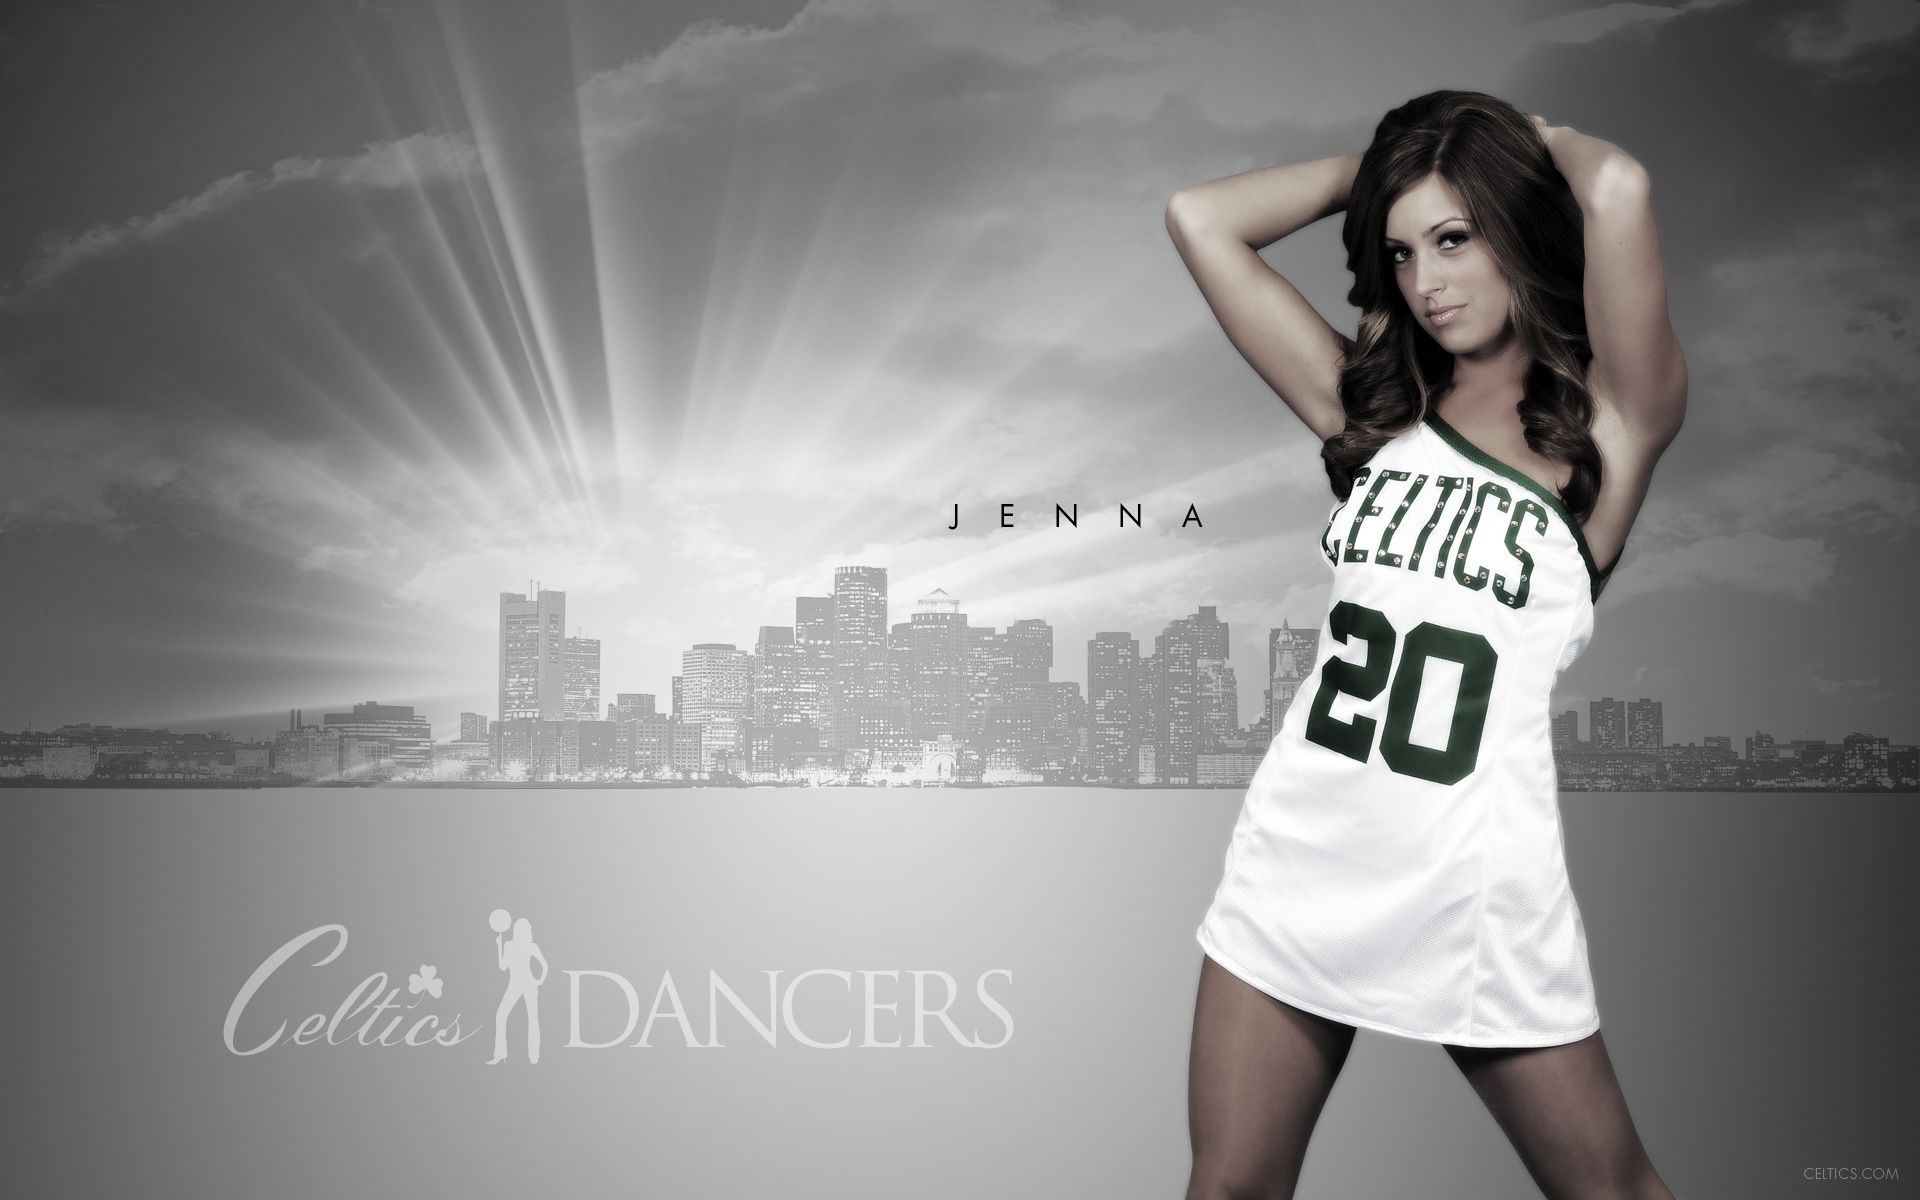 Jenna - Celtics Dancers Bio 2009-2010 | Celtics.com - The official ...